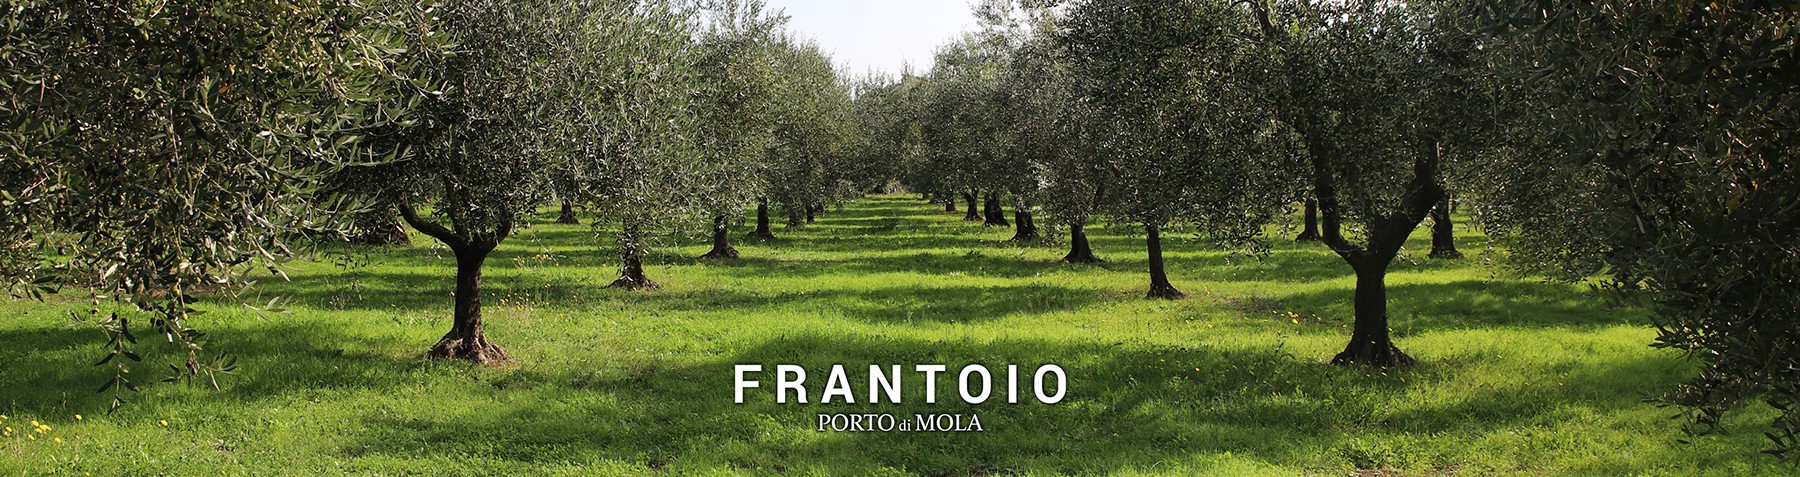 Frantoio Porto di Mola: Organic Extra Virgin Olive Oil